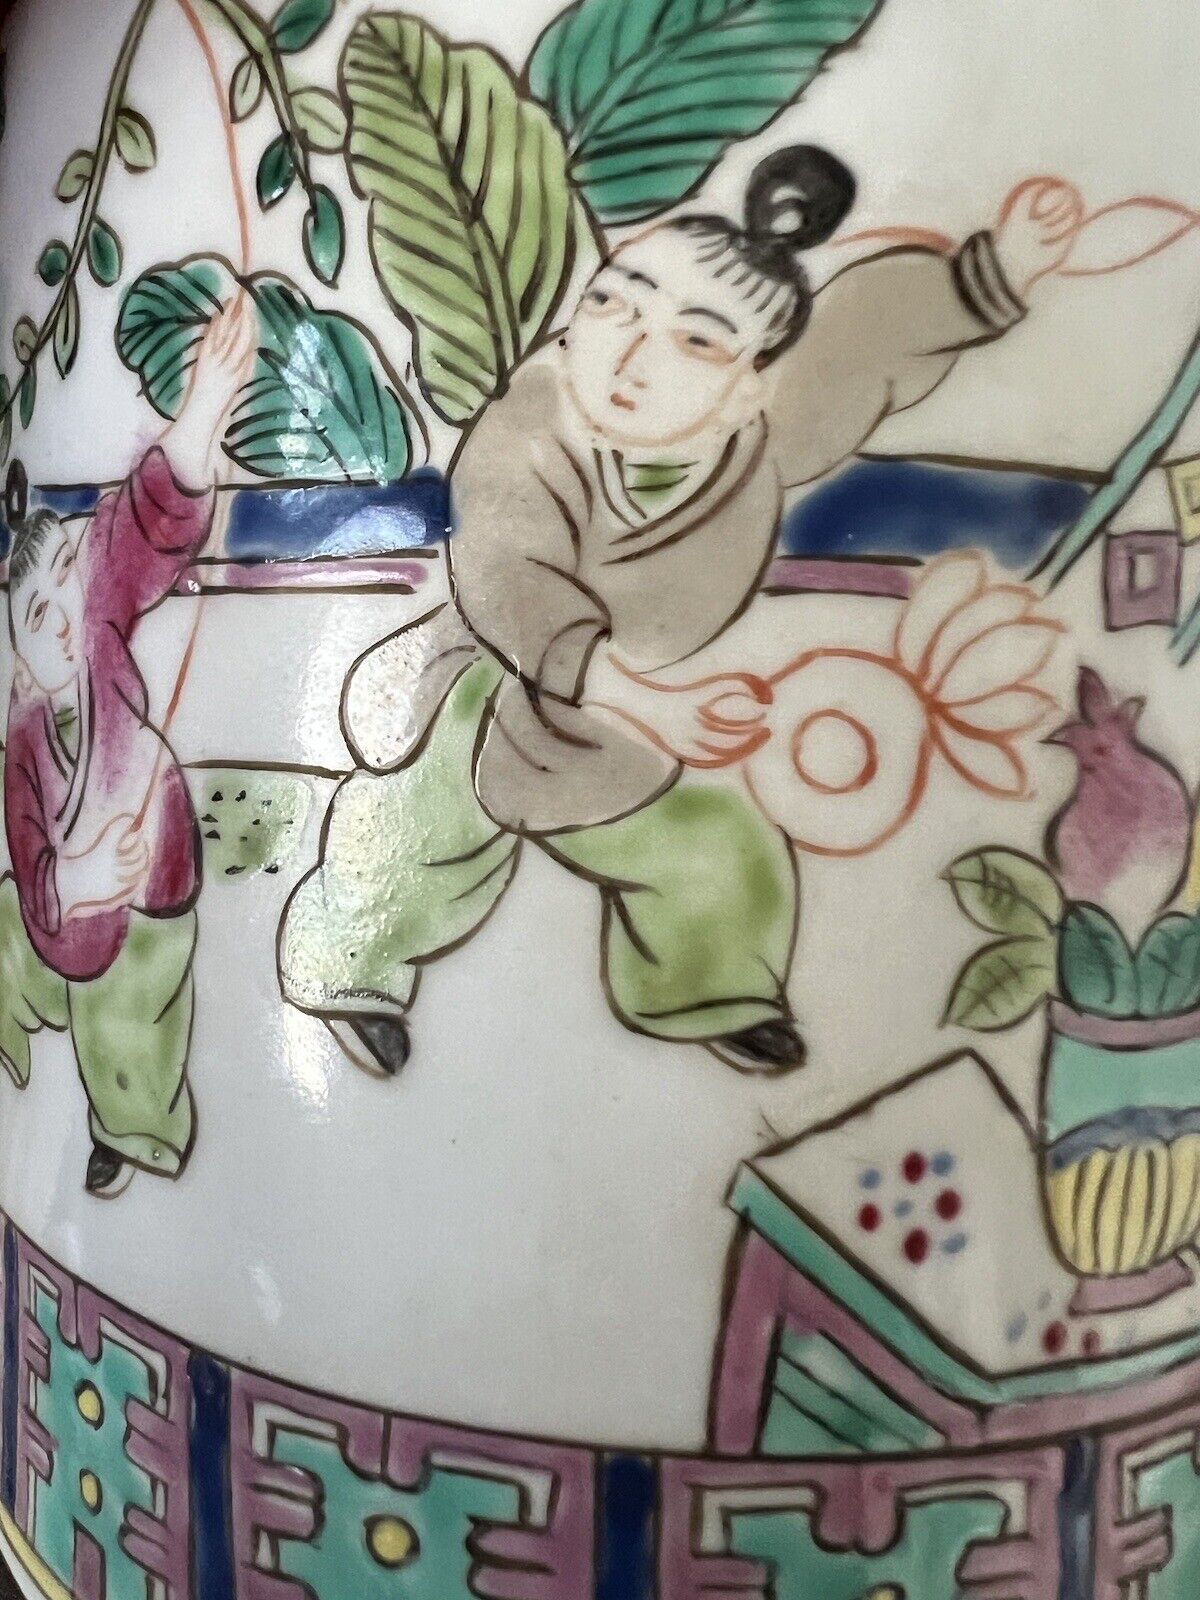 2 Antique Chinese Hand Paint Dragon Children Cylinder Hallmark Famille Jars 6" Без бренда - фотография #14